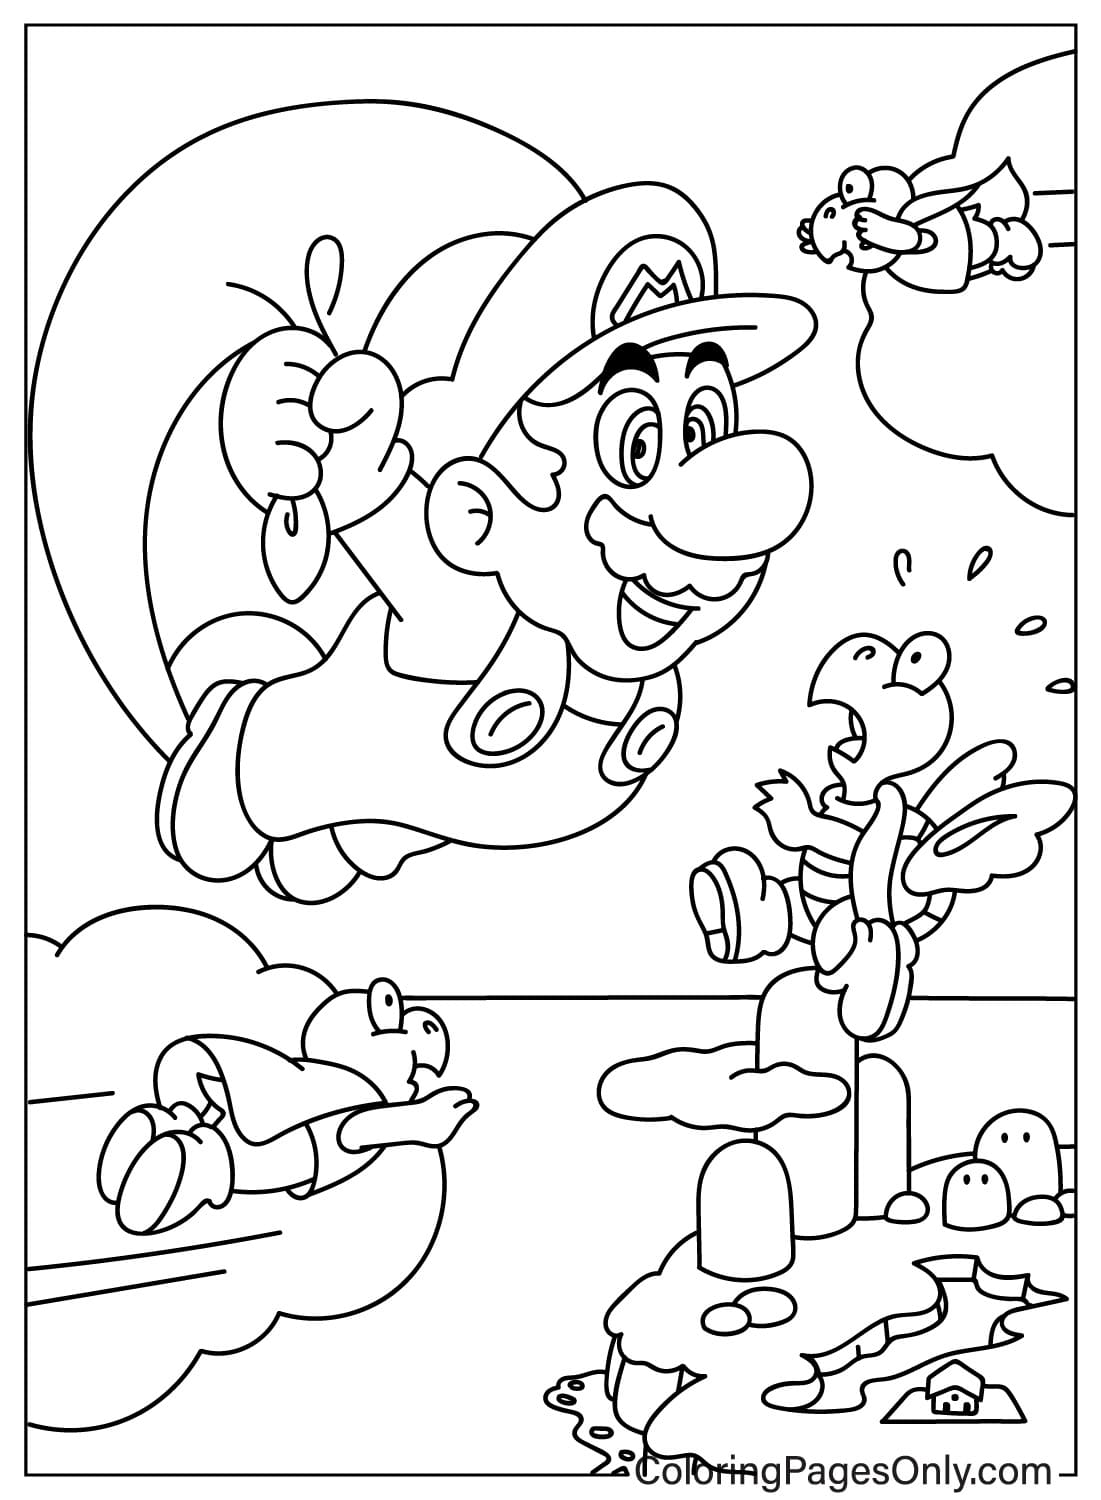 Mario en Koopa Troopa kleurplaat van Koopa Troopa